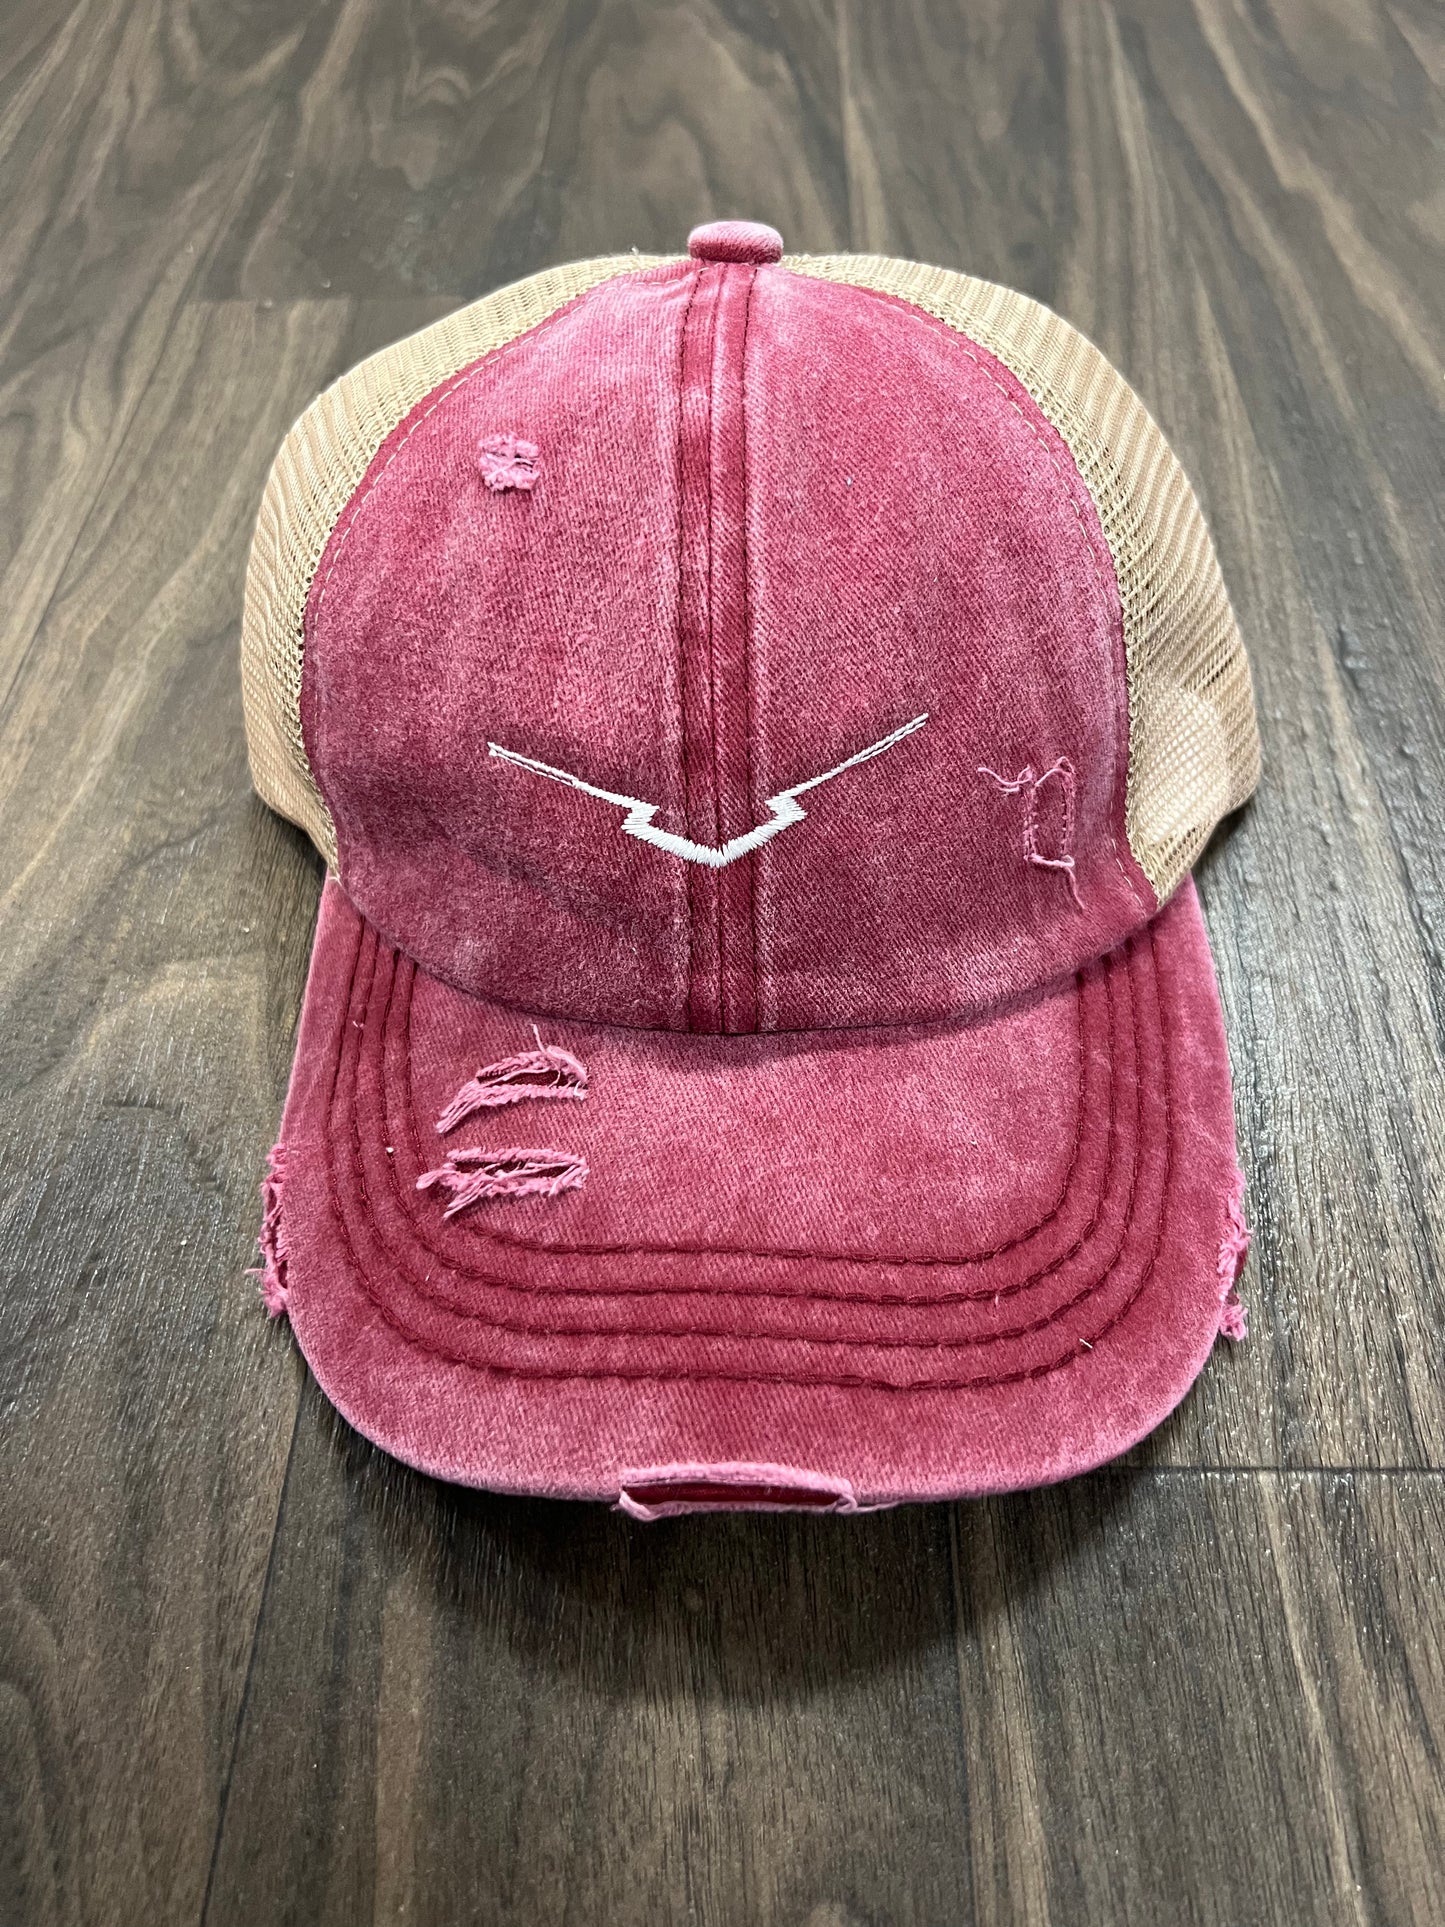 Women’s Red Pony Cap